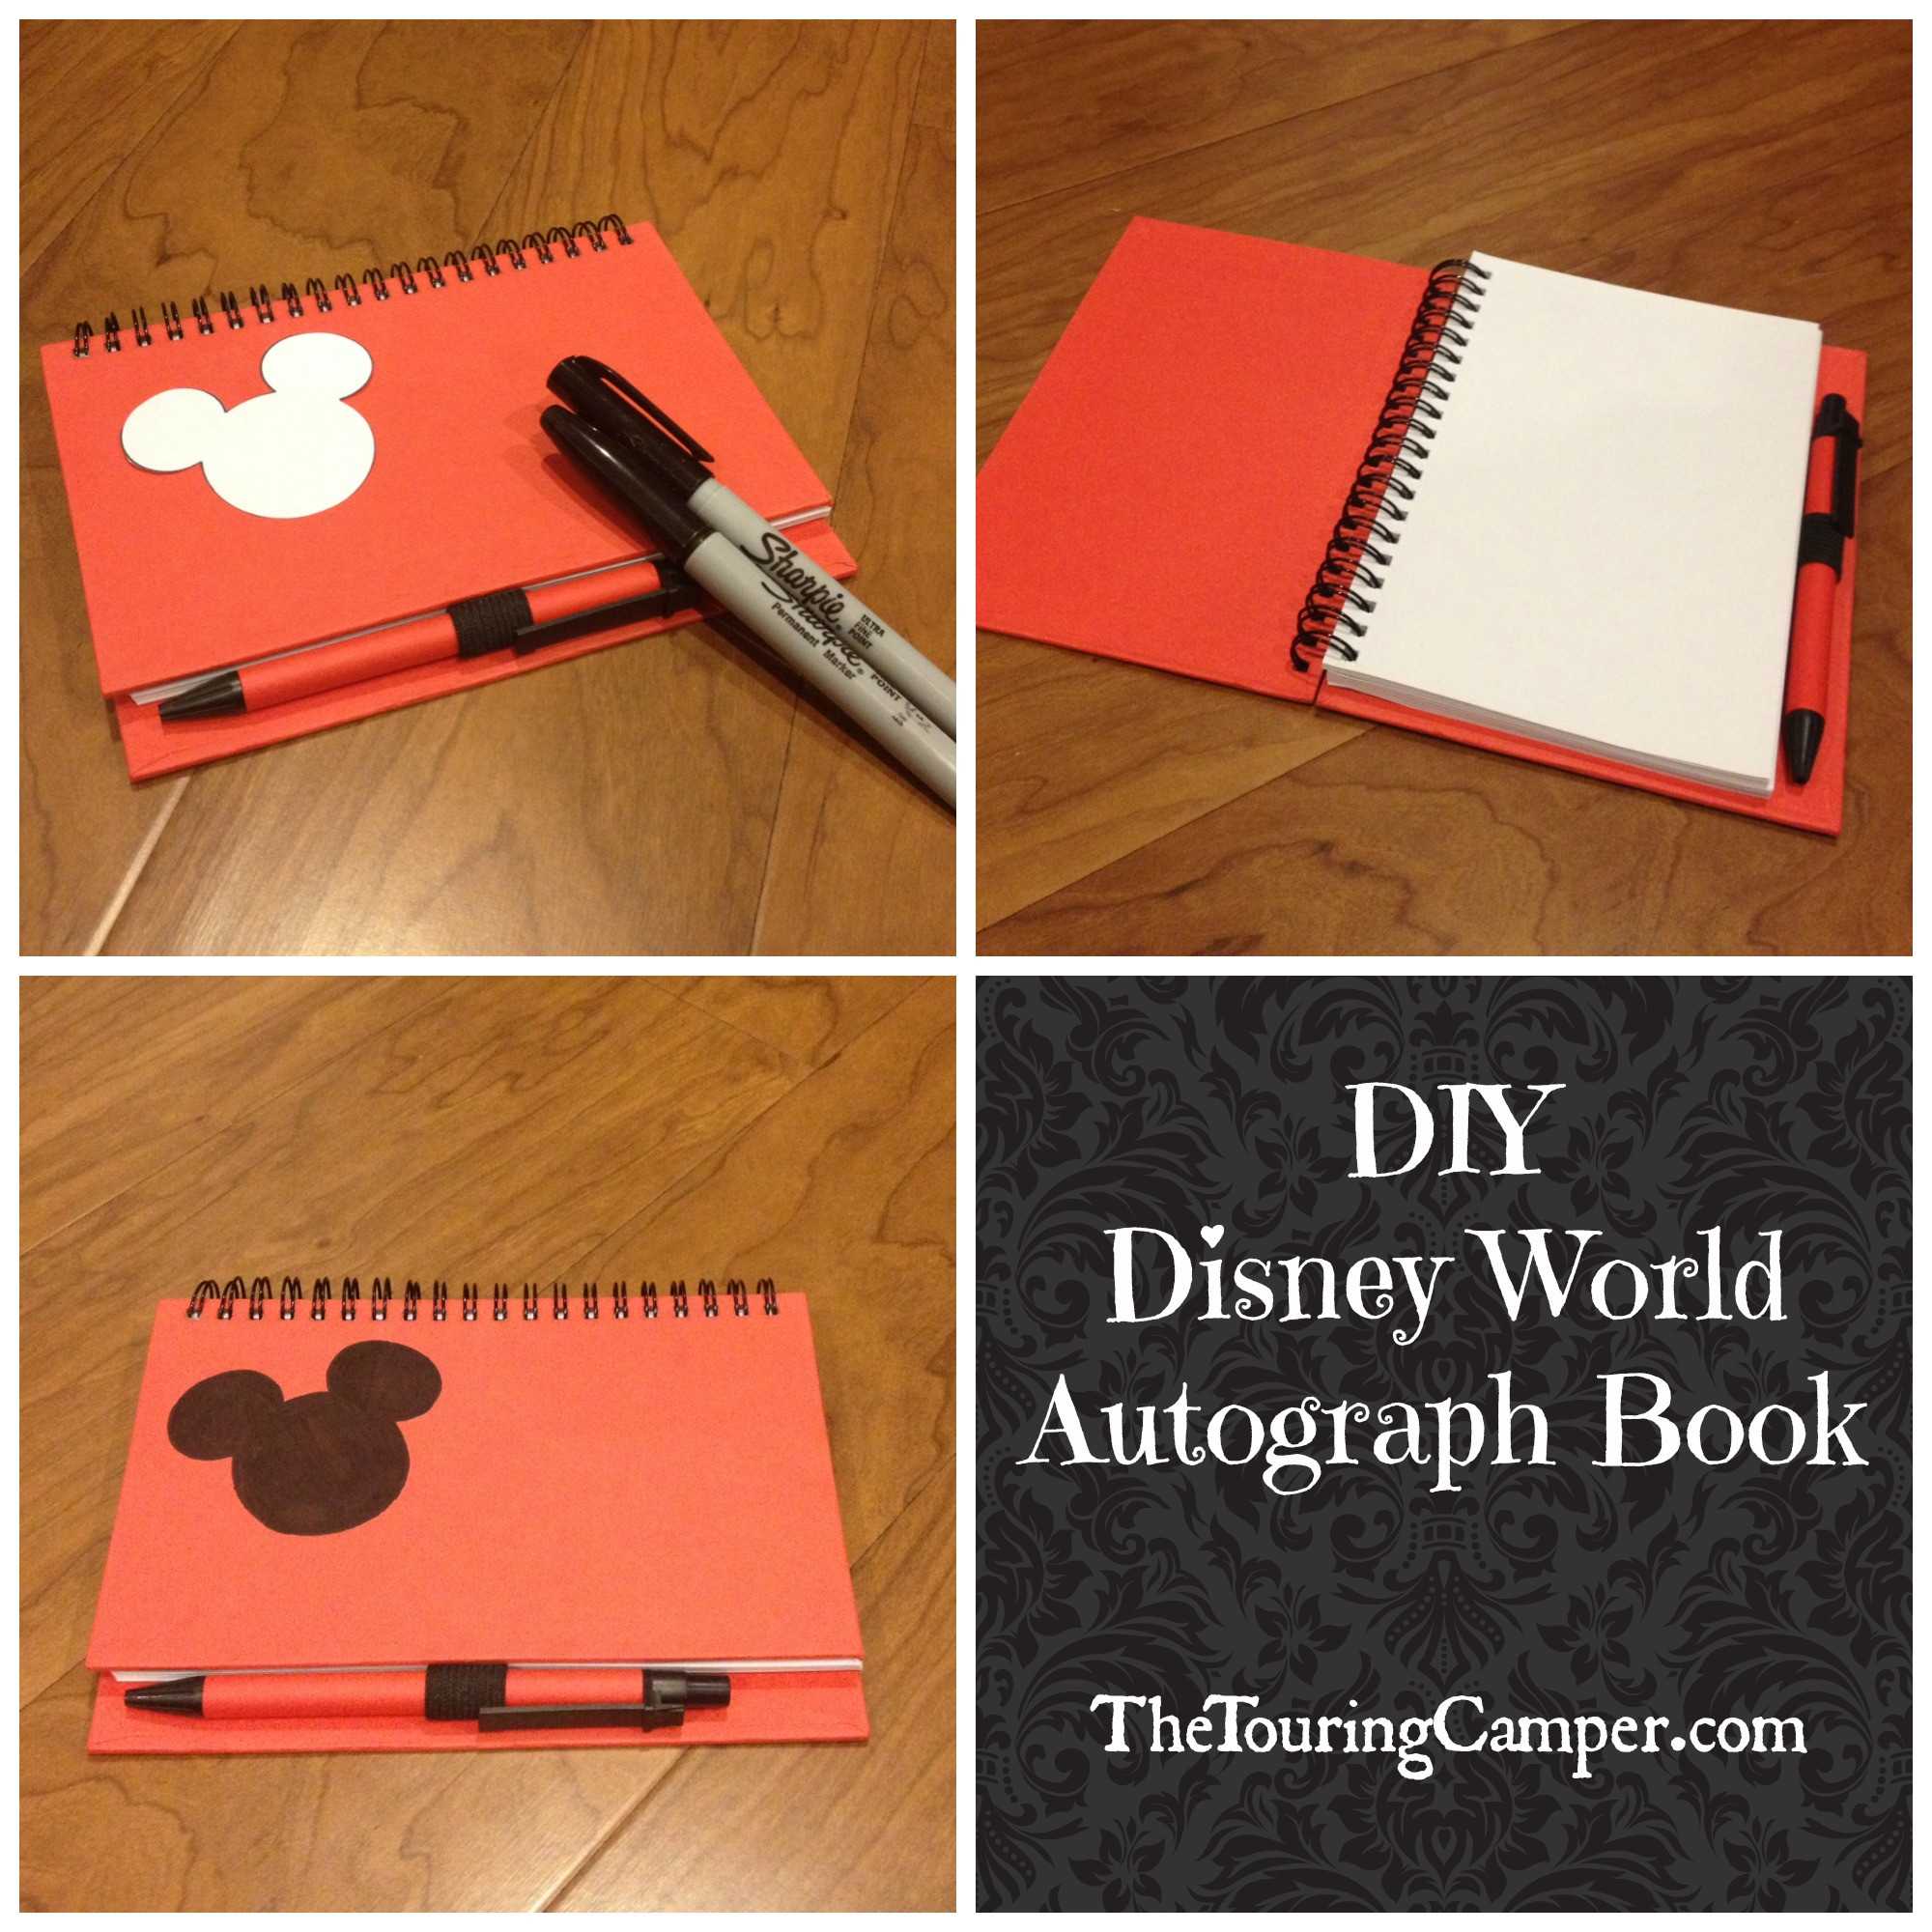 Best ideas about DIY Disney Autograph Book
. Save or Pin DIY Disney autograph book Now.